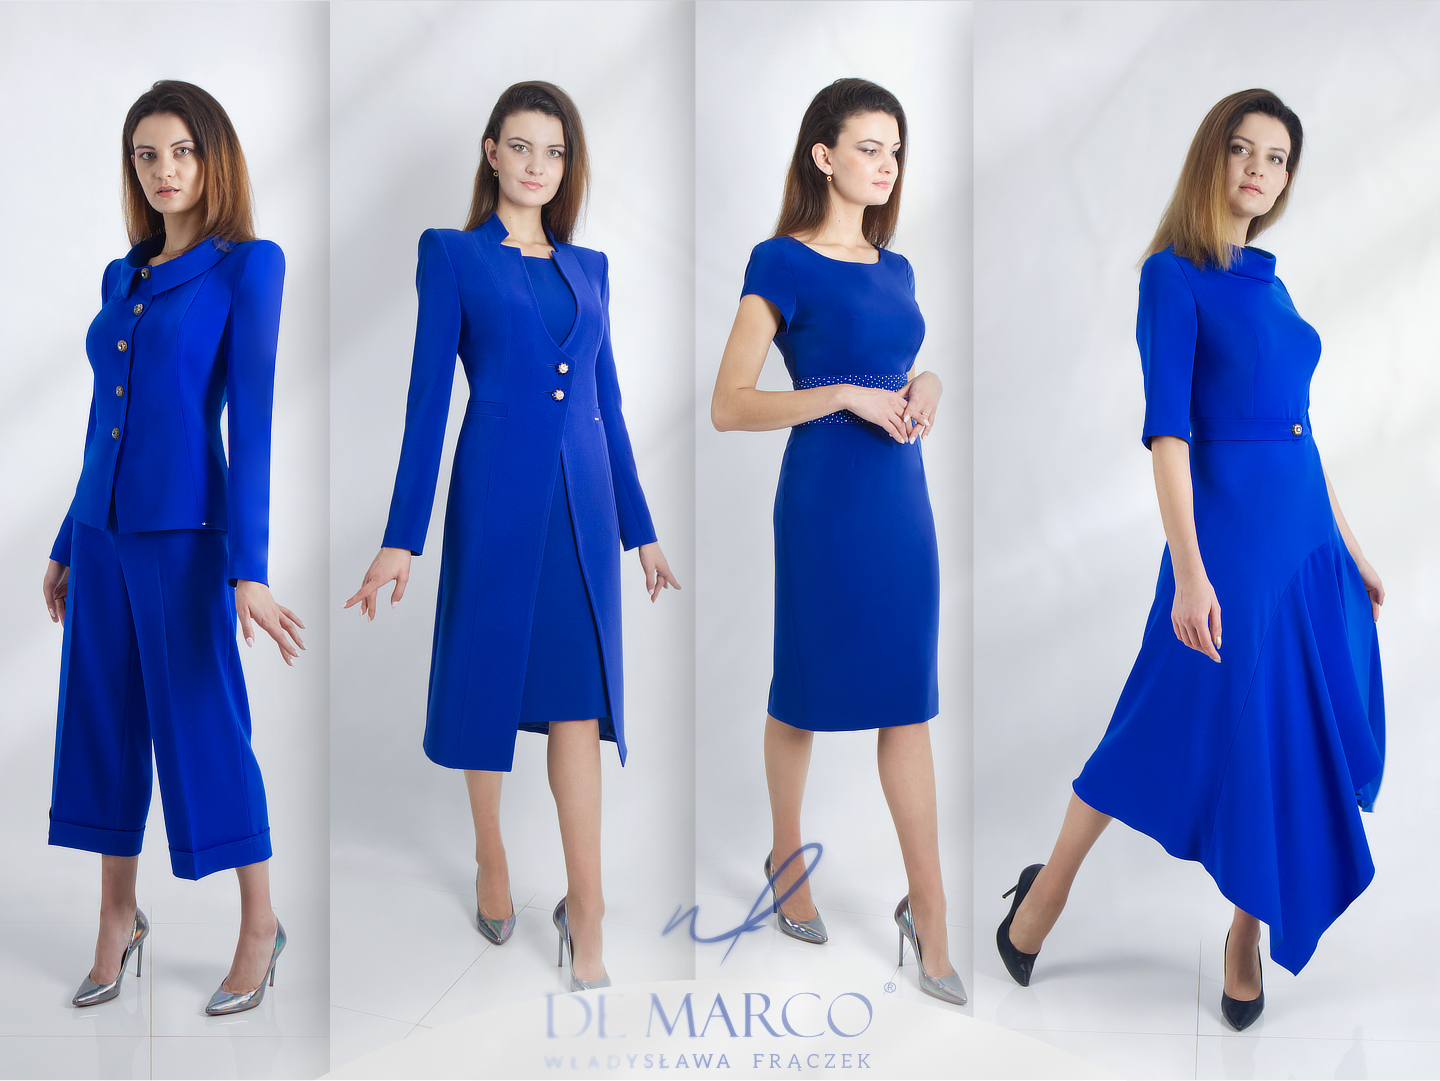 Luksusowa odzież damska sklep internetowy De Marco wizytowe stylizacje